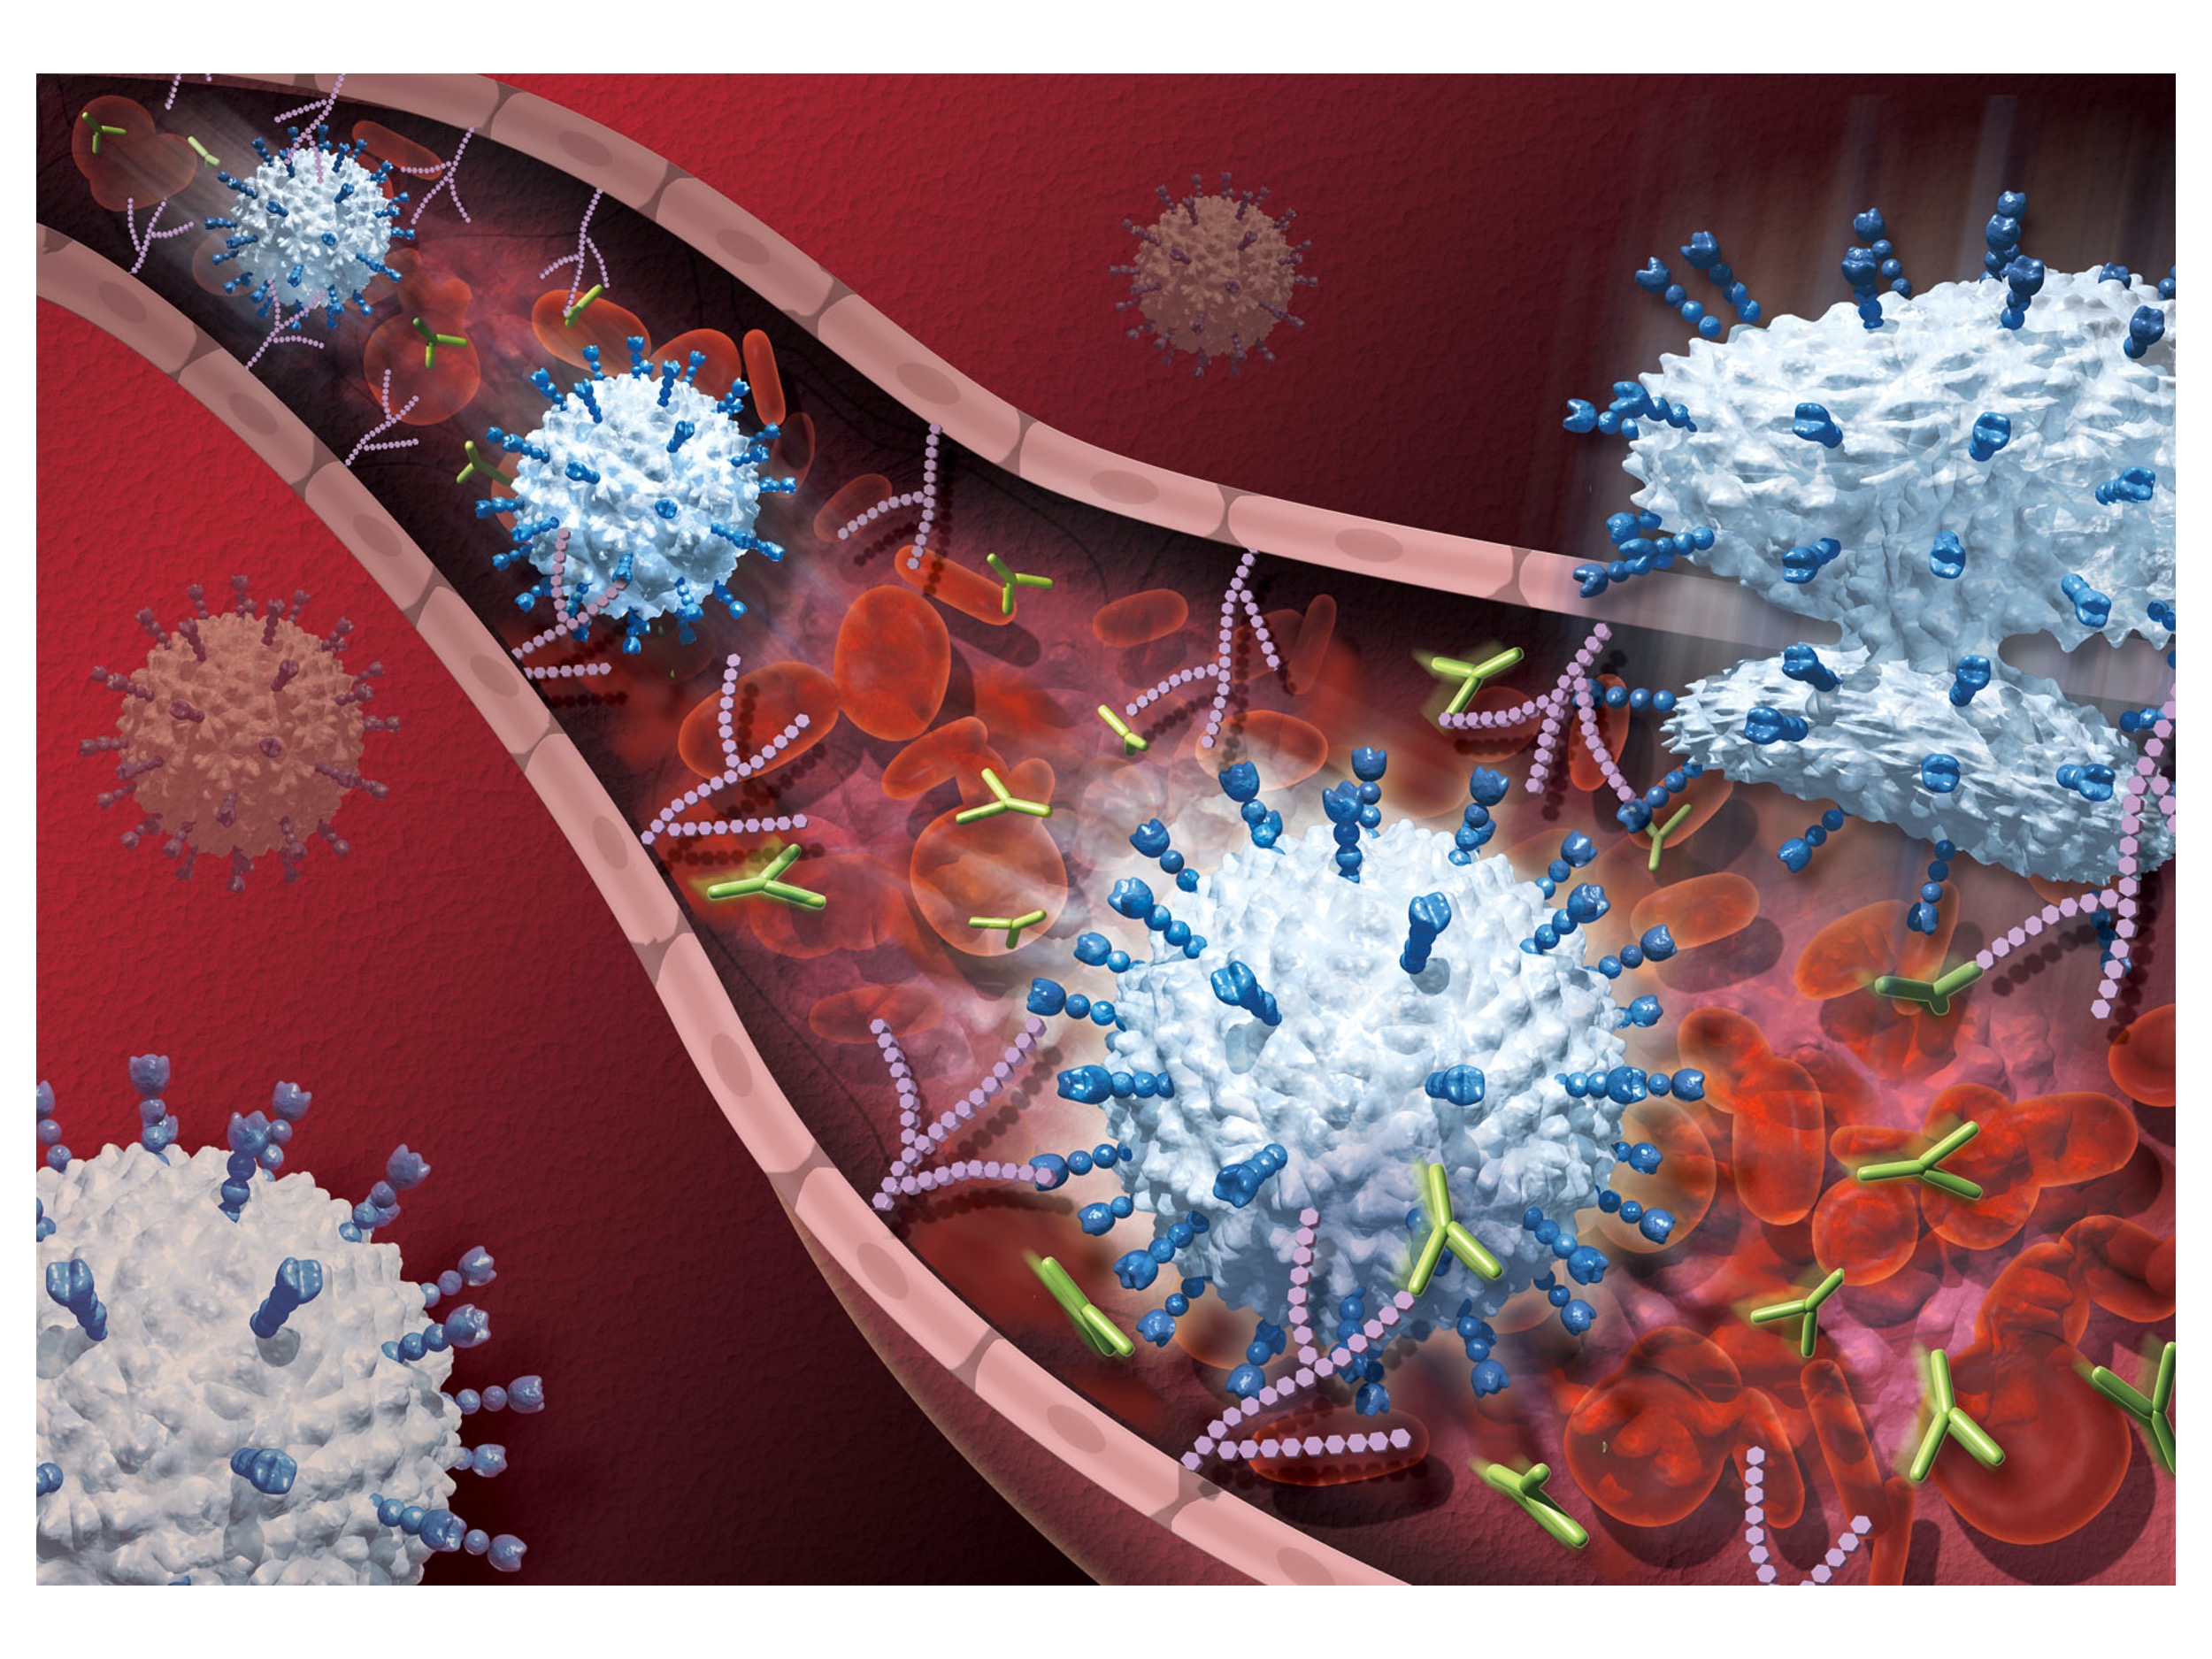 免疫関連疾患治療効果を示す抗糖鎖モノクローナル抗体の開発